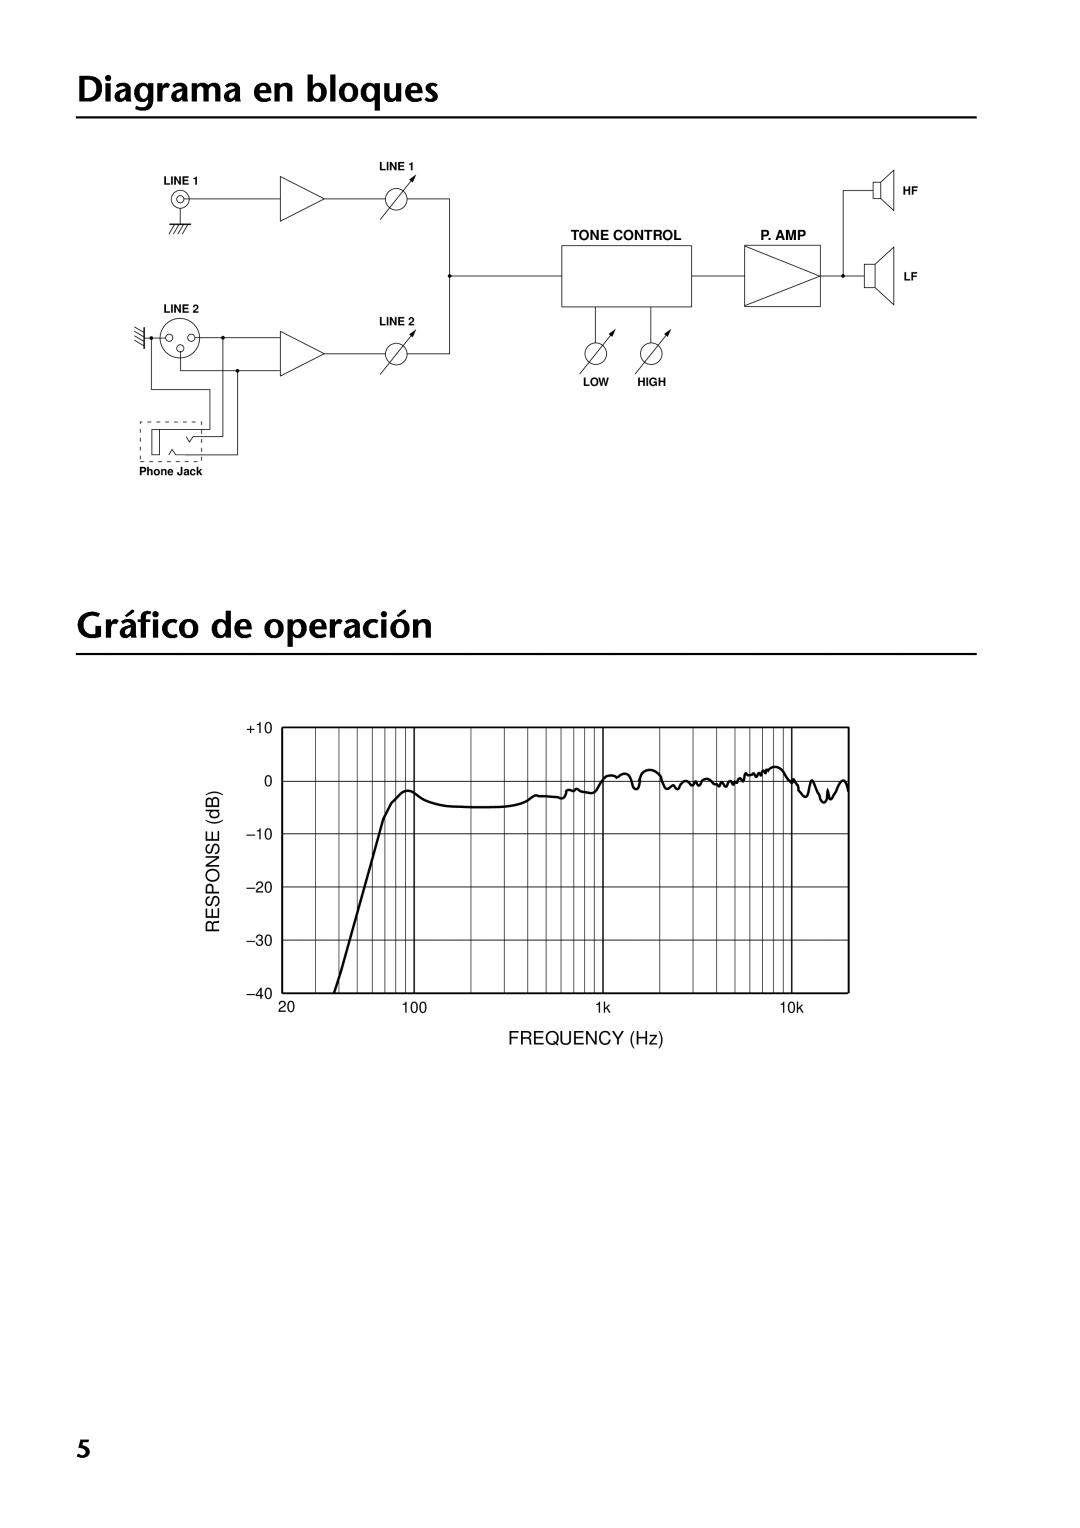 Yamaha MSP3 Diagrama en bloques, Gráﬁco de operación, RESPONSE dB, FREQUENCY Hz, +10, Tone Control, P. Amp, Line Line 